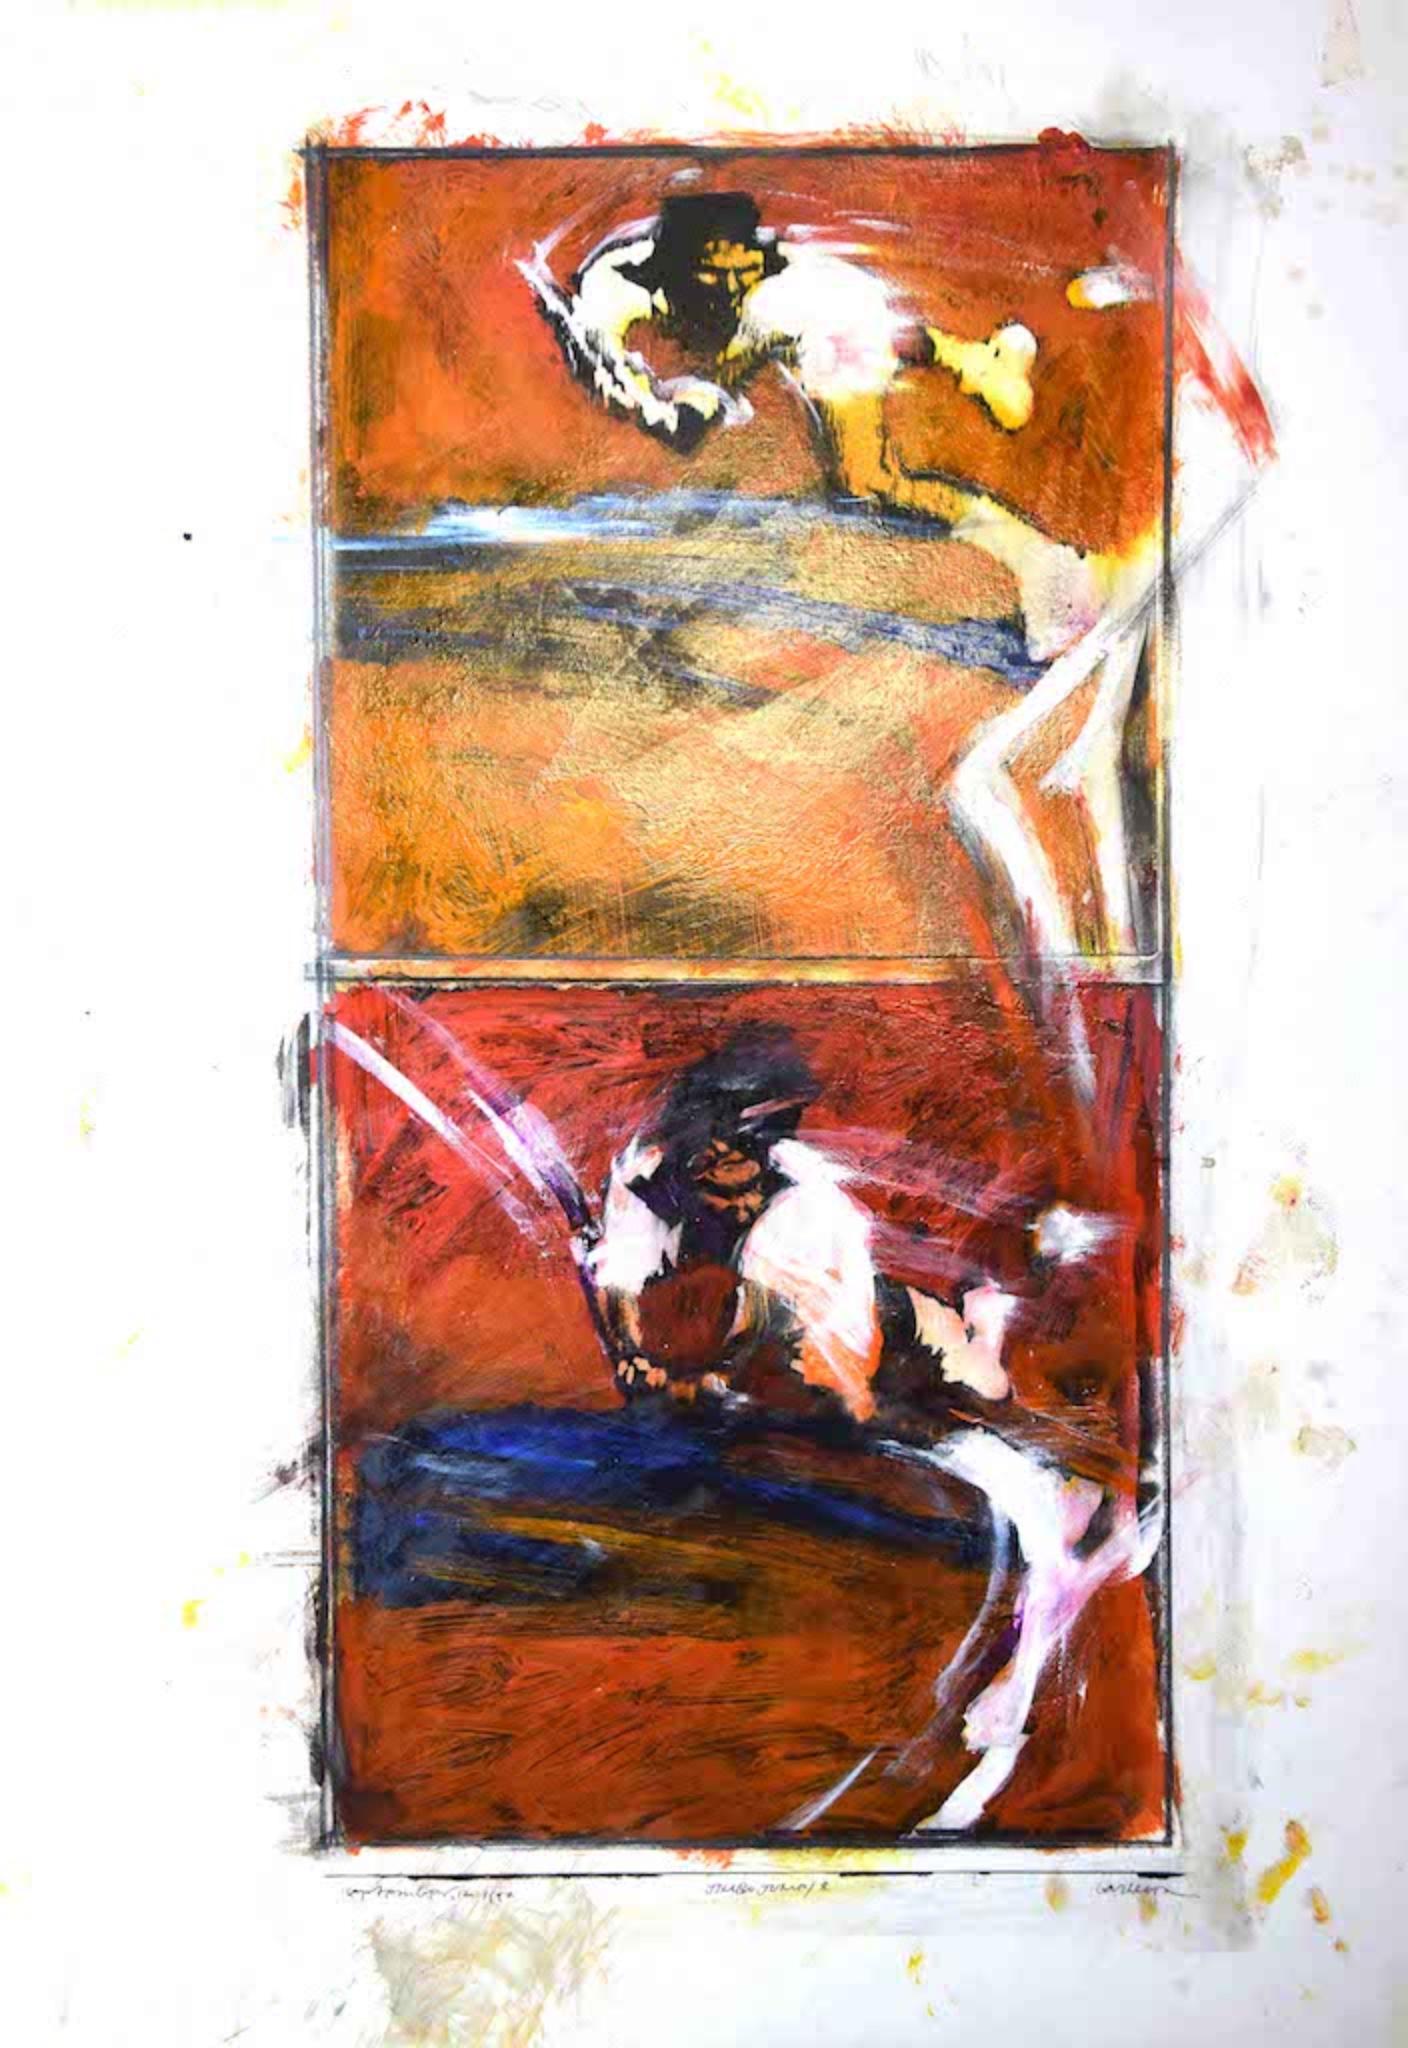 Jimbo Jump ist ein Originalgemälde von Sergio Barletta aus dem Jahr 1992 in Mischtechnik, Tusche und Tempera.

Rechts unten handsigniert. Unten in der Mitte betitelt, unten links datiert.

Unter guten Bedingungen

Das Kunstwerk stellt halb-abstrakte